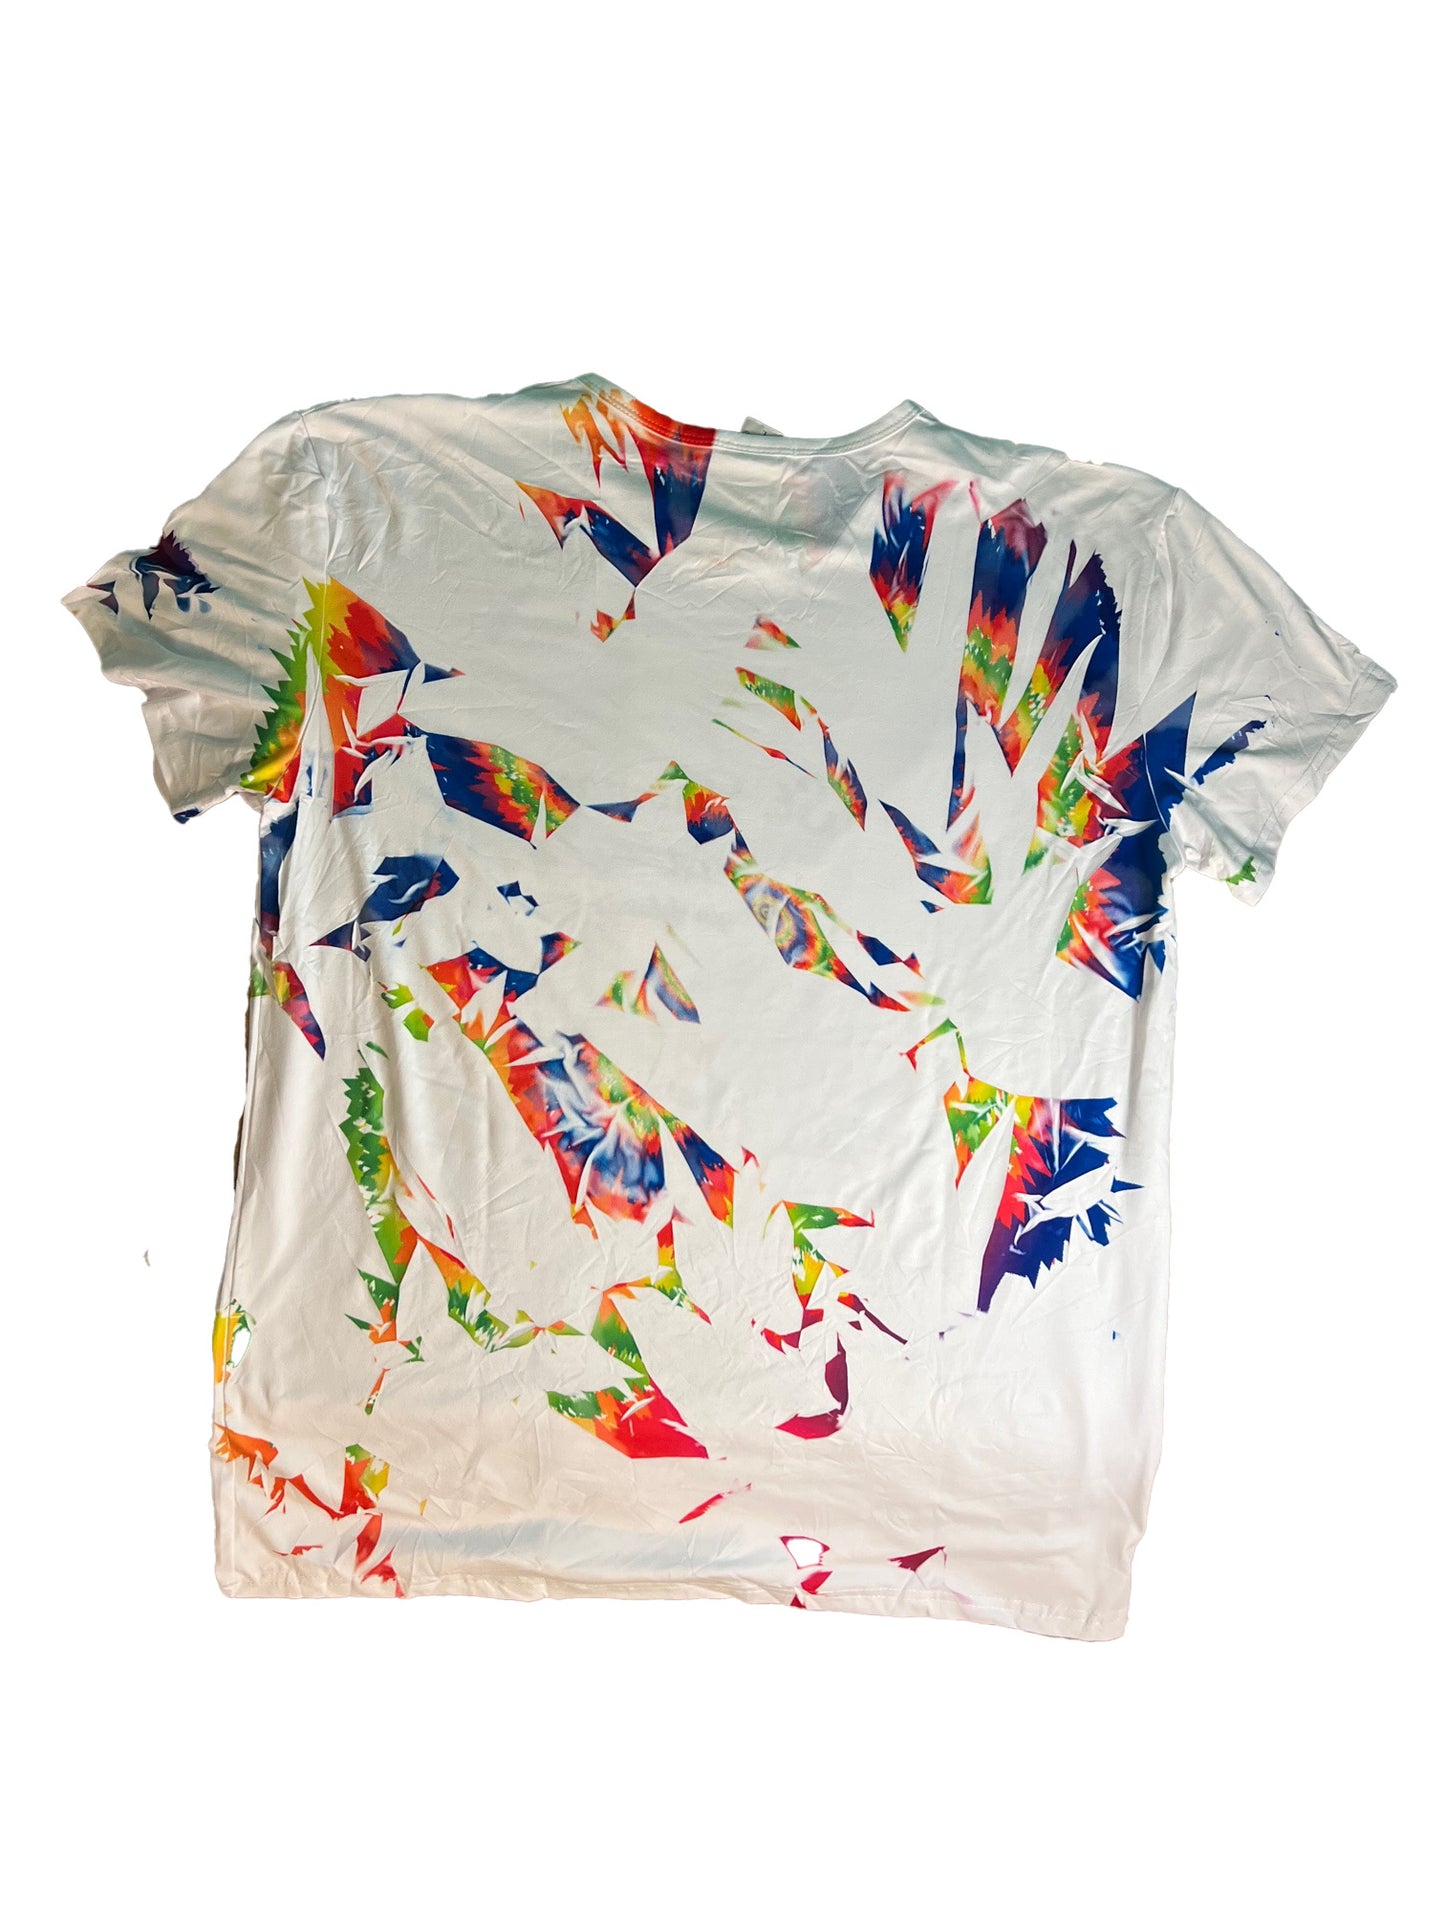 Virgin Islands tie dye style T-Shirt